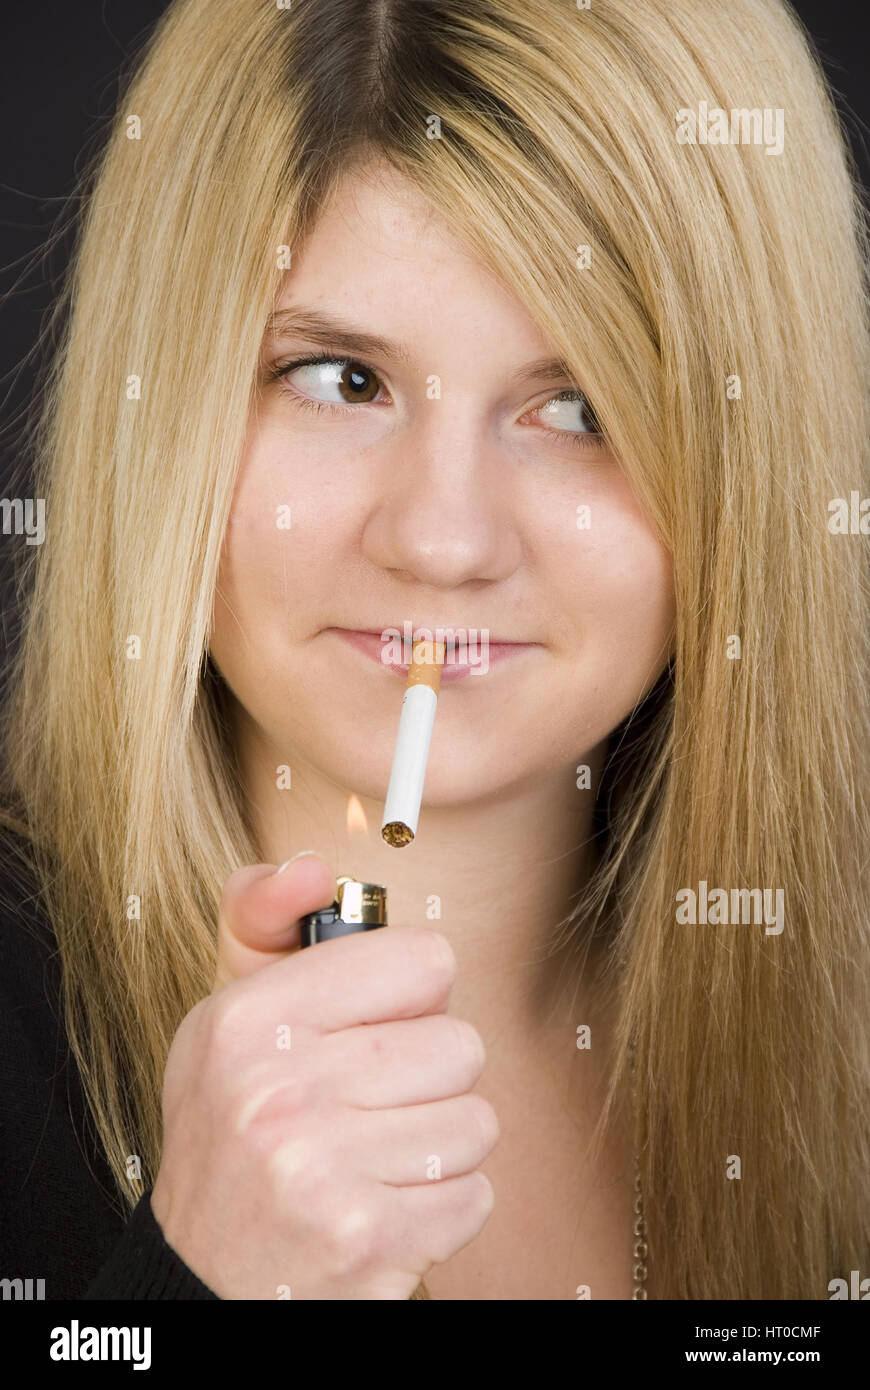 Jugendliches M‰dchen z¸ndet sich heimlich eine  Zigarette an - Teenager smokes a cigaret Stock Photo